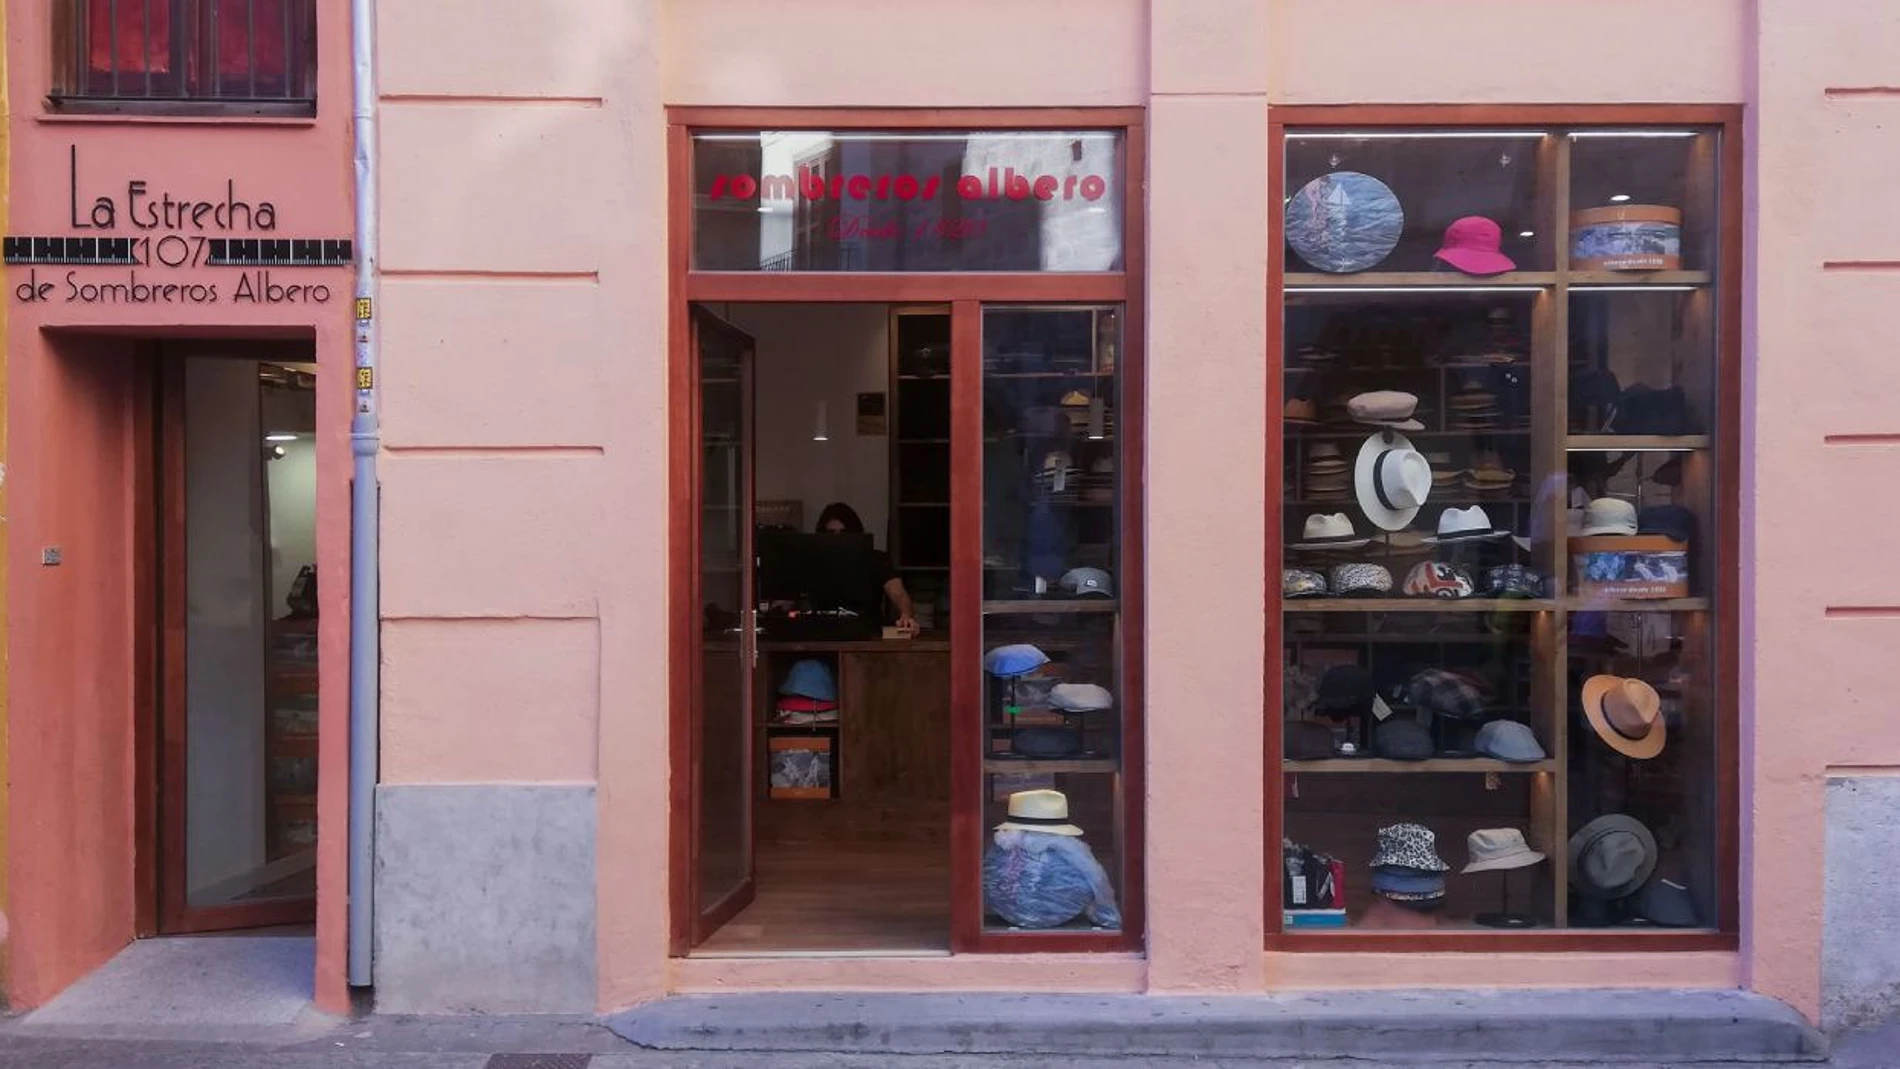 Comercio emblemáticos como Sombreros Albero ha conseguido abrir una tienda nueva en el edifico más estrecho de Europa